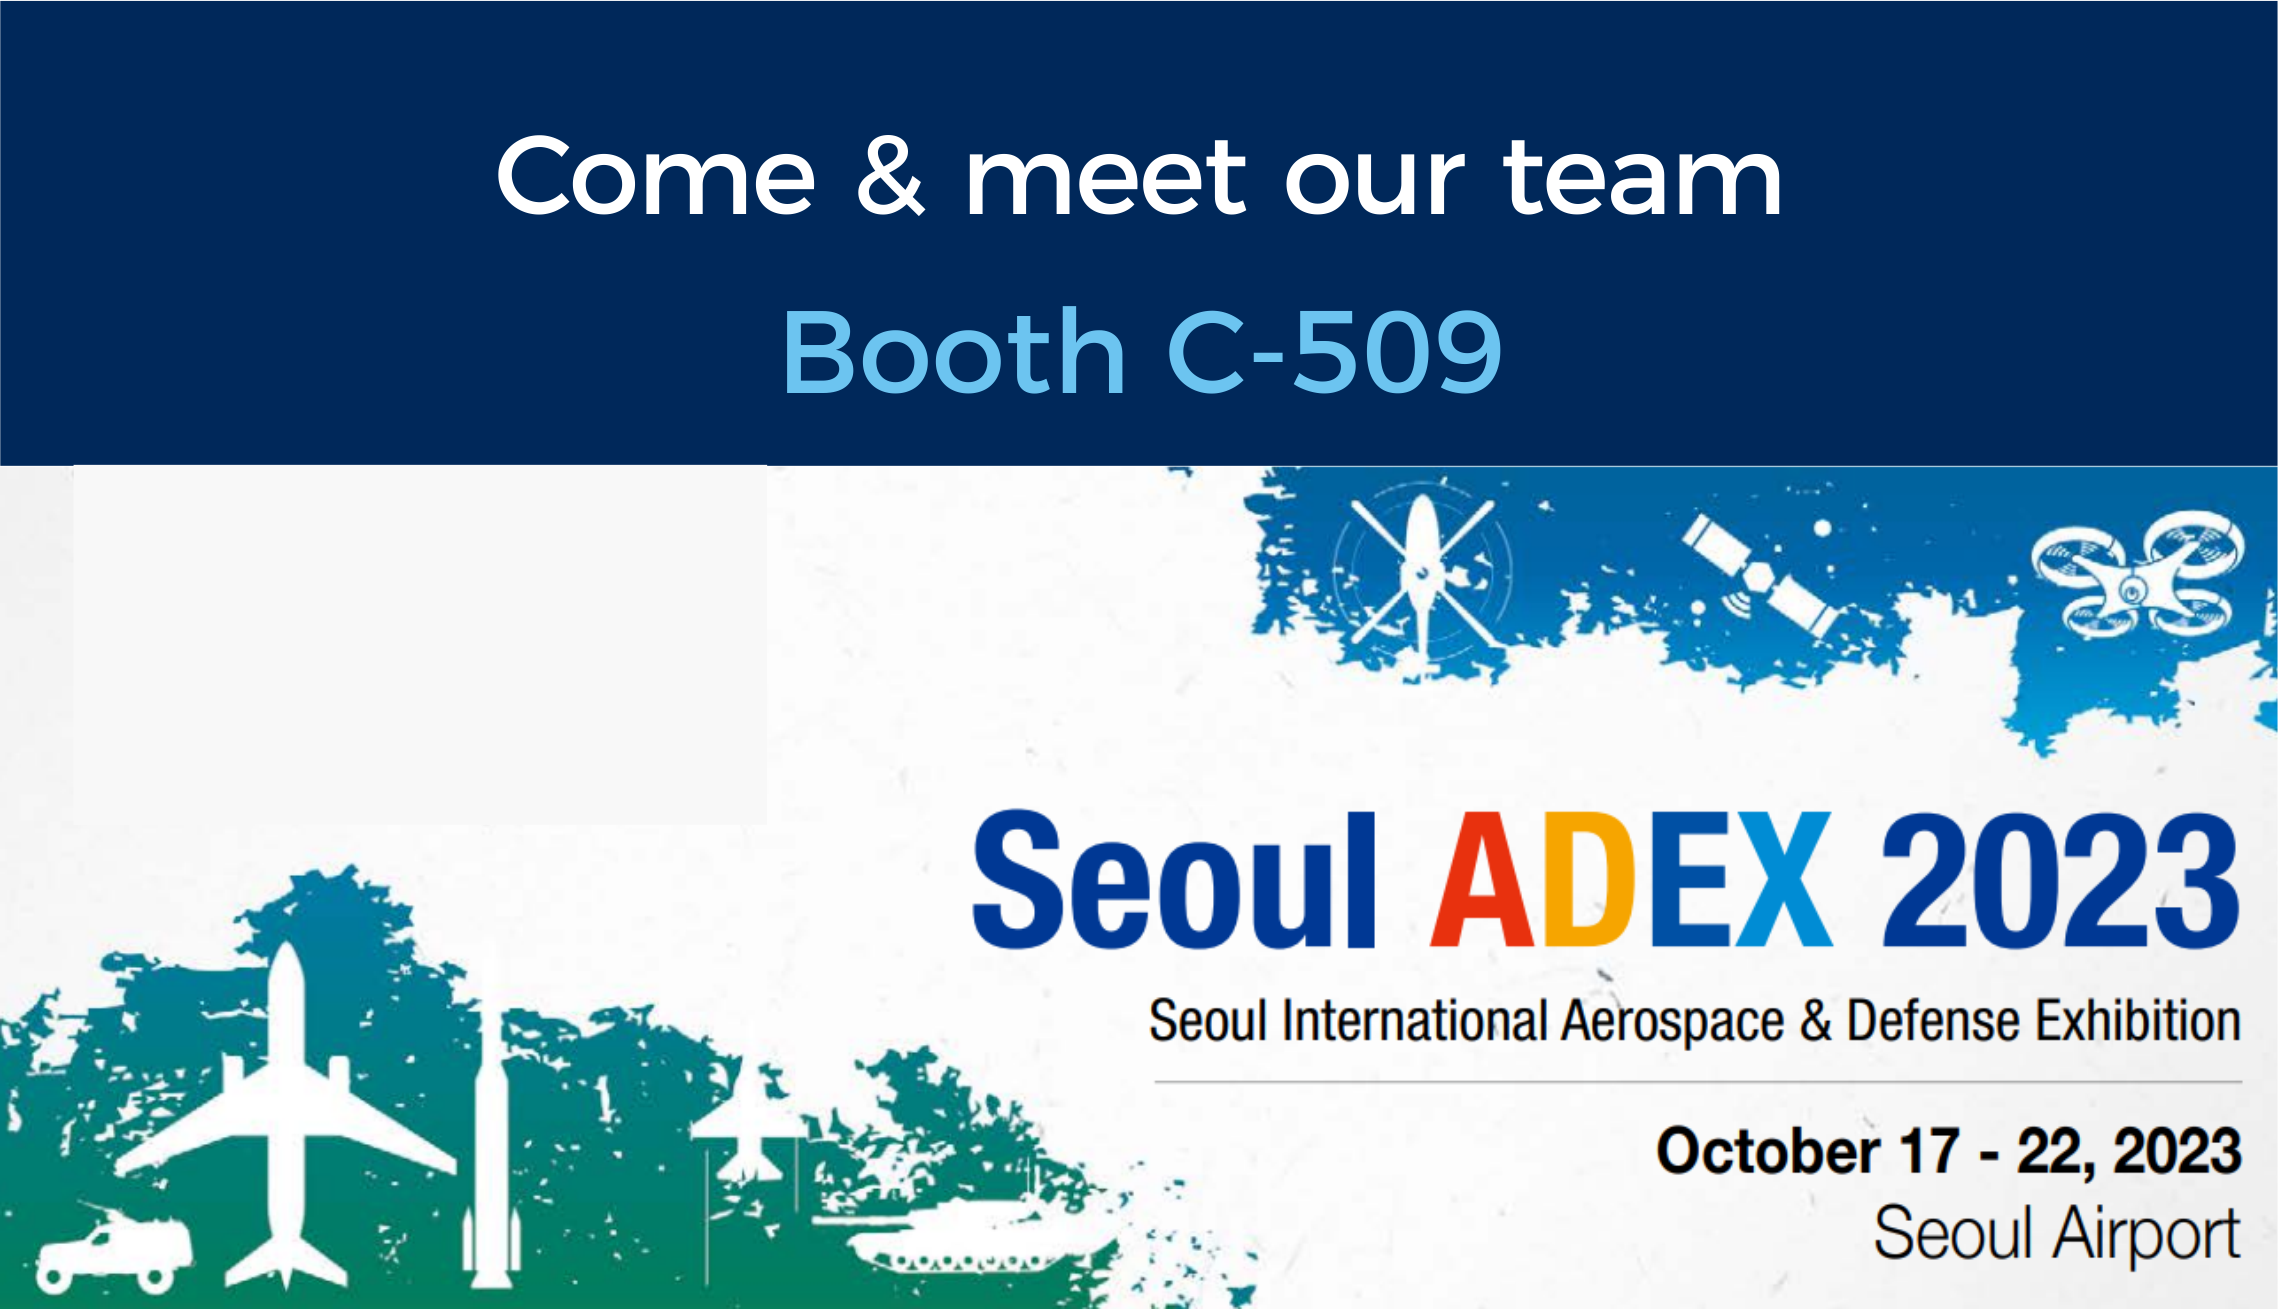 Notre équipe sera présente au salon ADEX à Séoul